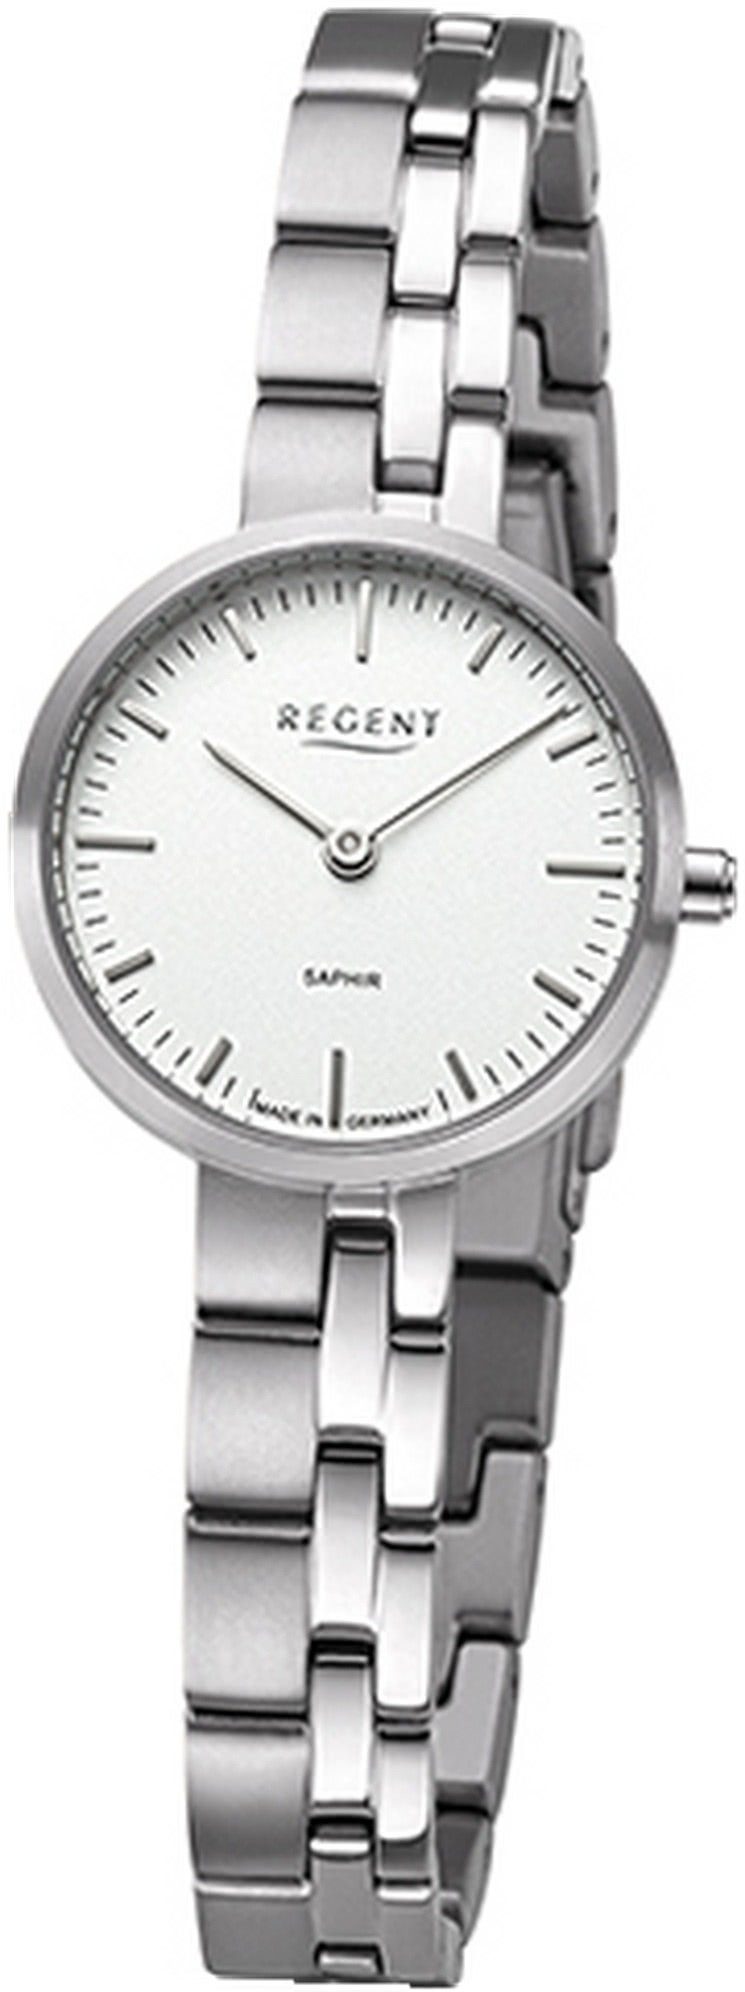 Regent Quarzuhr Regent Damen Armbanduhr Analog, Damenuhr Titanbandarmband anthrazit grau, rundes Gehäuse, klein (26mm)